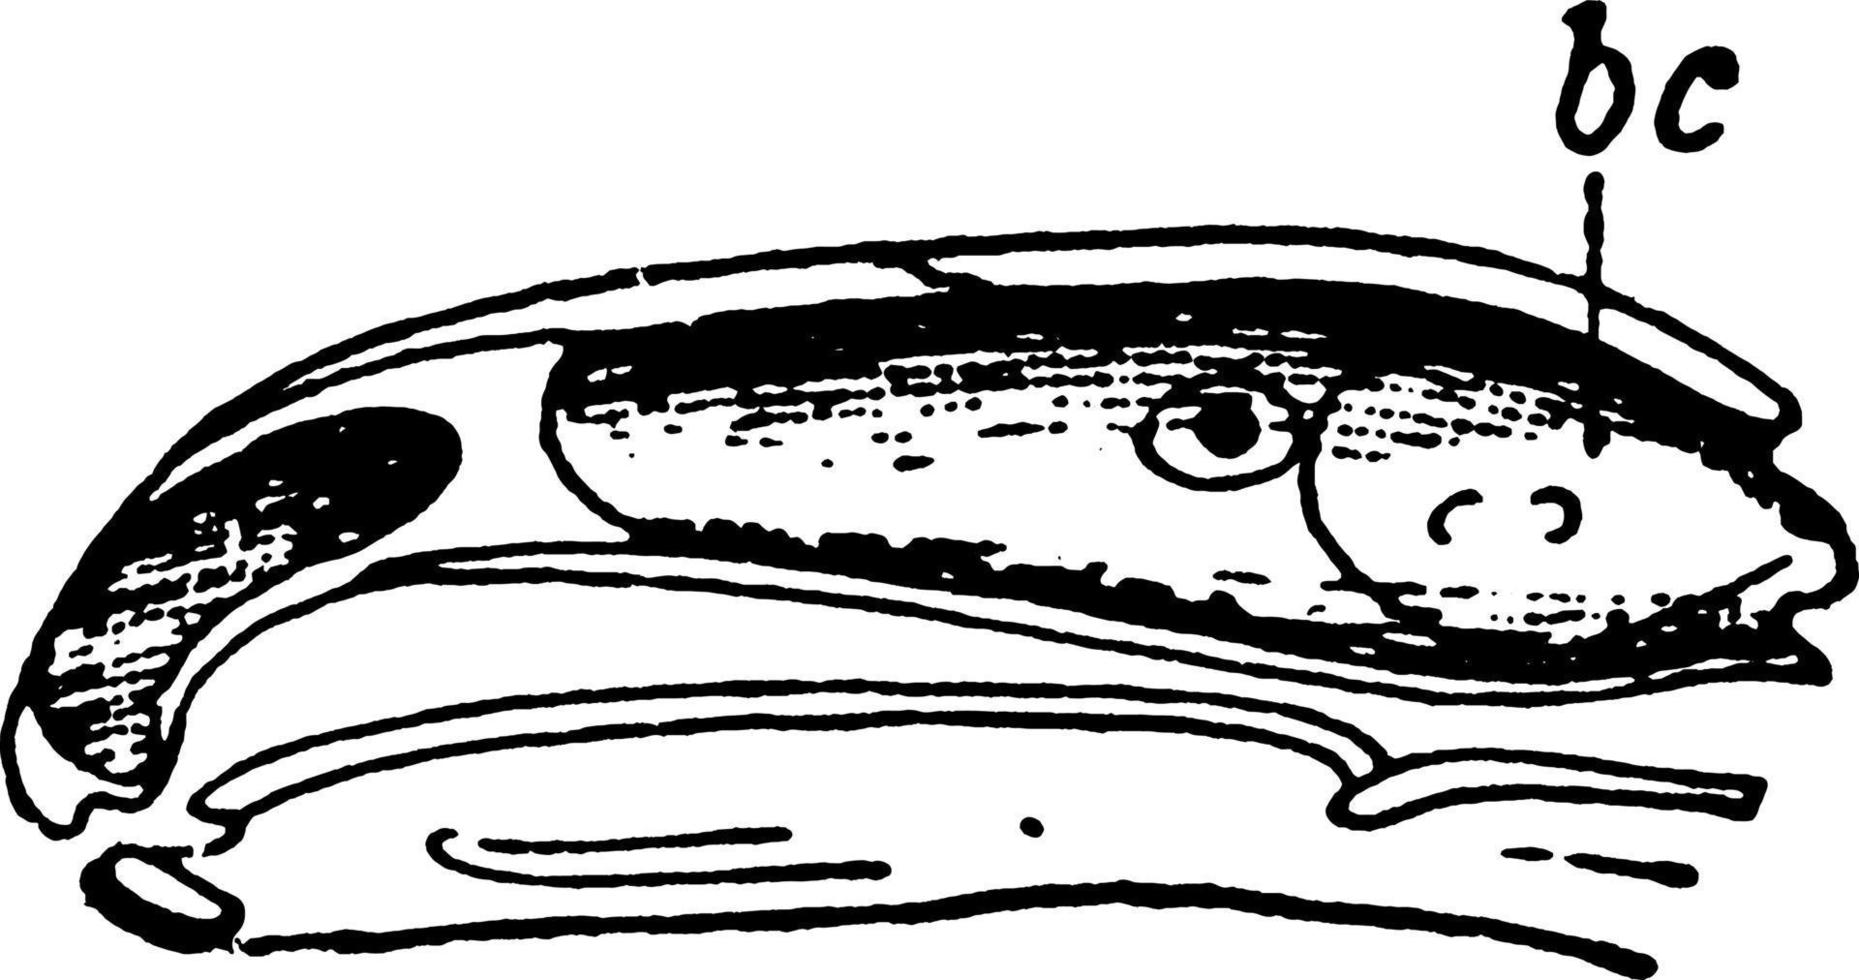 cráneo de salamandra de fuego o salamandra maculosa, ilustración vintage. vector